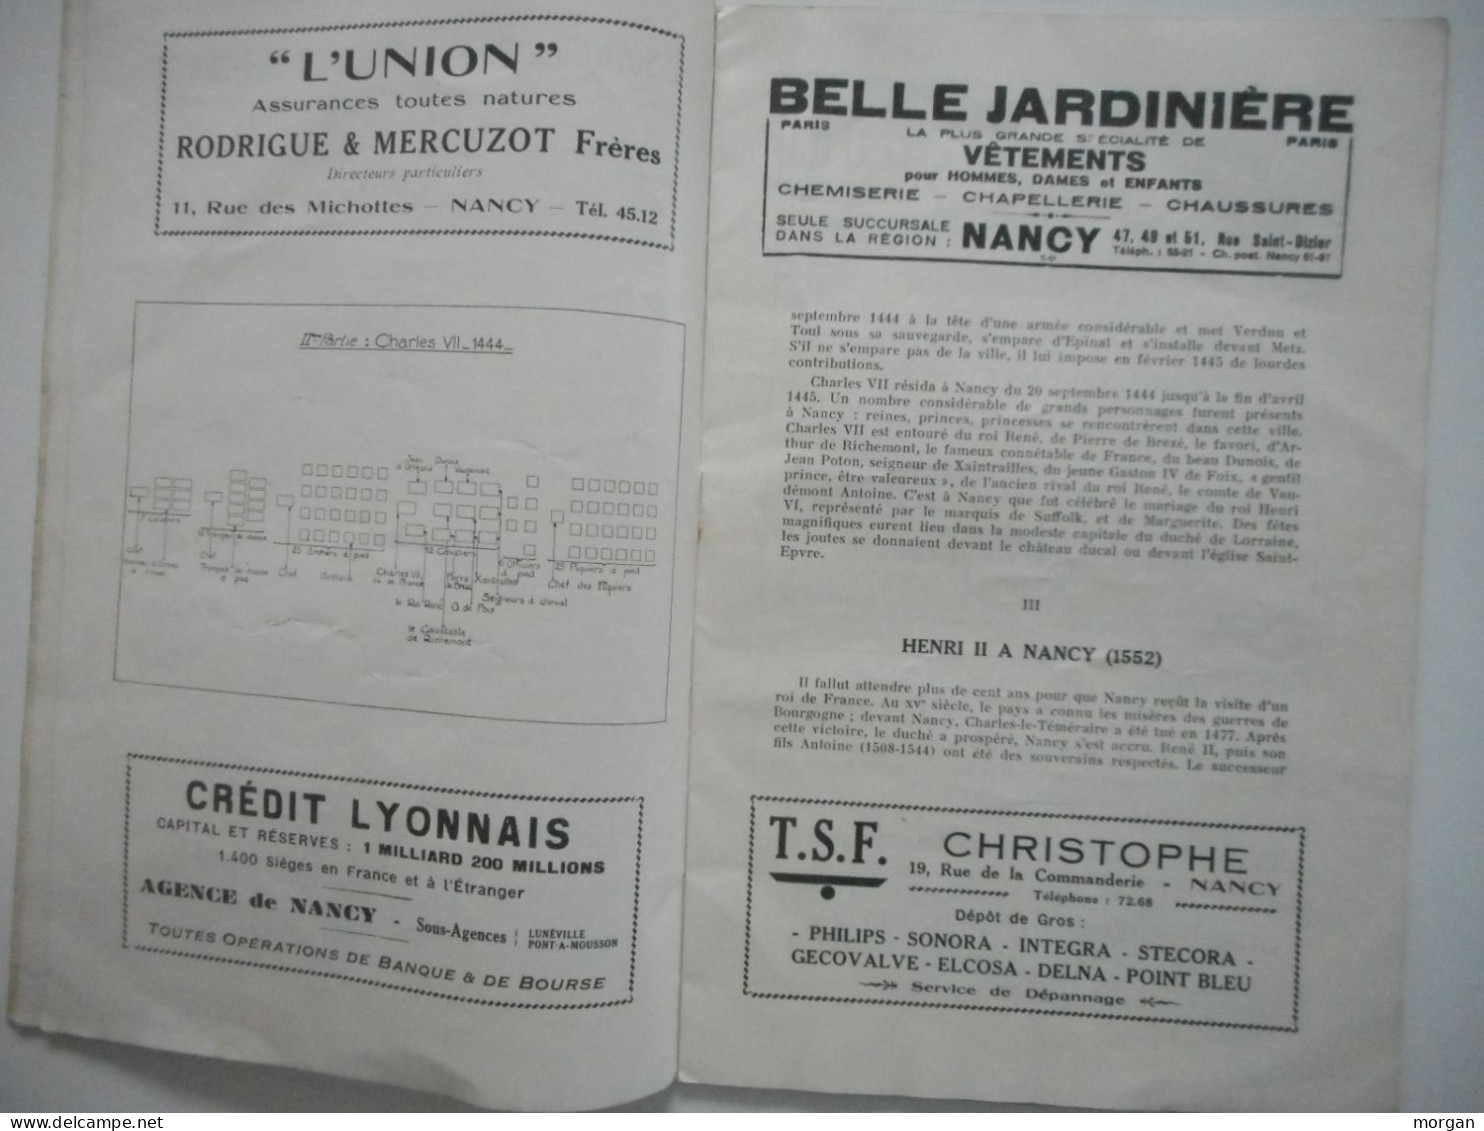 NANCY, 1937, PROGRAMME DU DEFILE HISTORIQUE DU BICENTENAIRE DU RATTACHEMENT DE LA LORRAINE A LA FRANCE